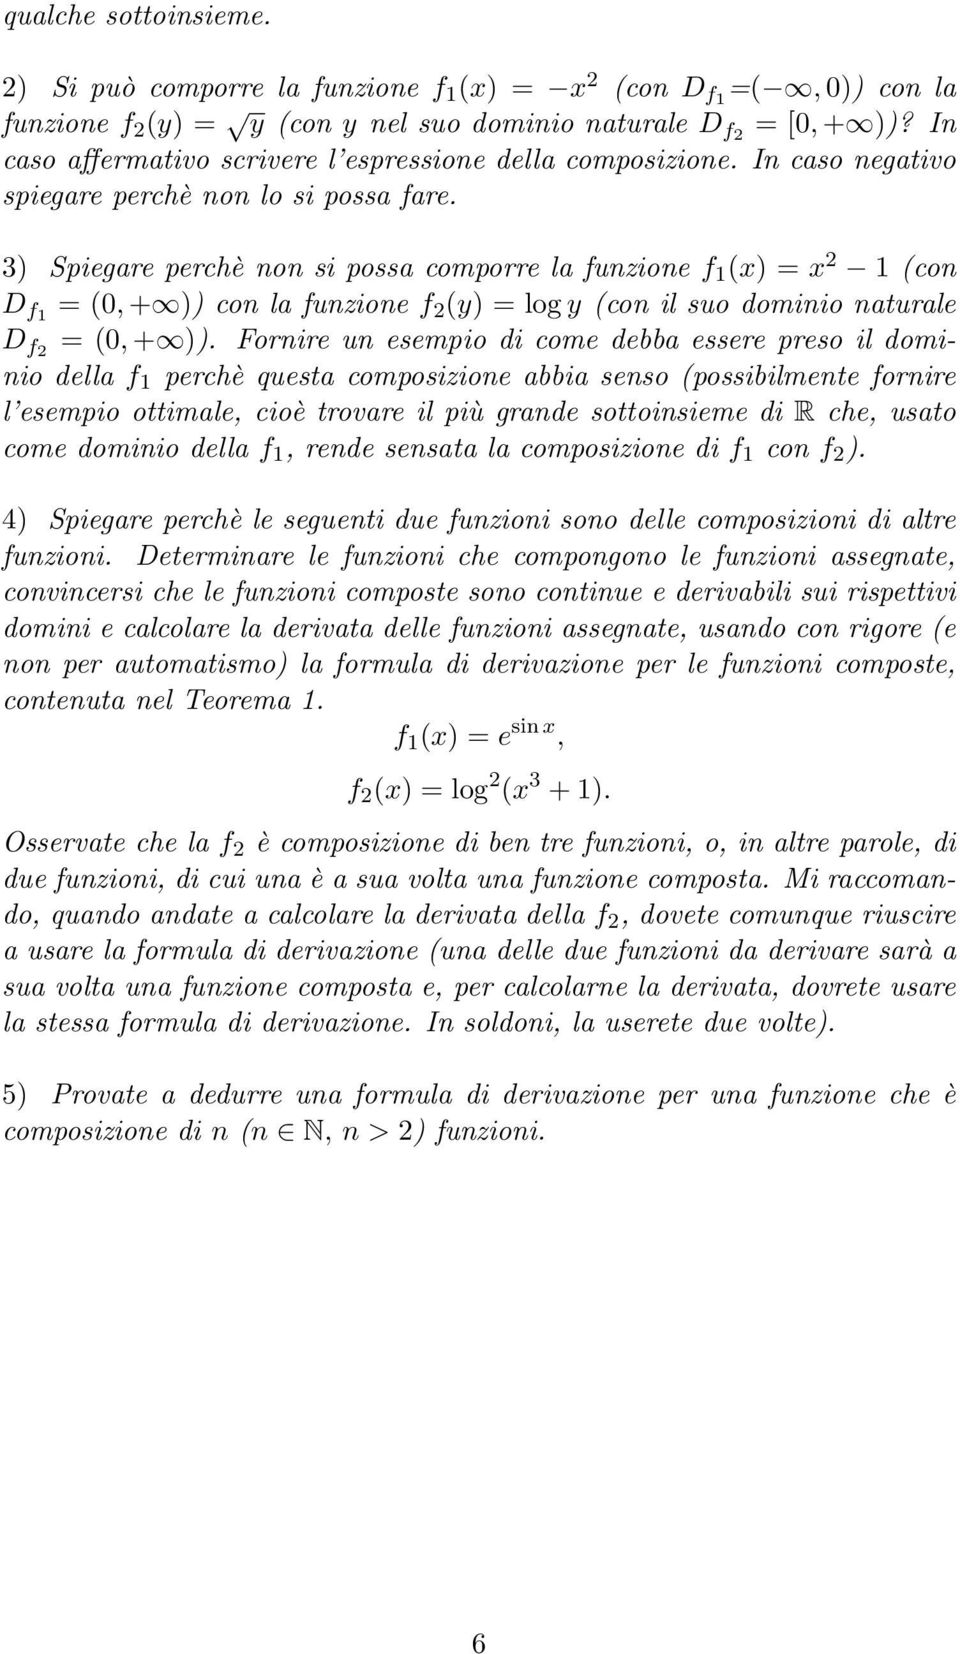 3) Spiegare perchè non si possa comporre la funzione f 1 () = 2 1 (con D f1 = (0, + )) con la funzione f 2 (y) = log y (con il suo dominio naturale D f2 = (0, + )).